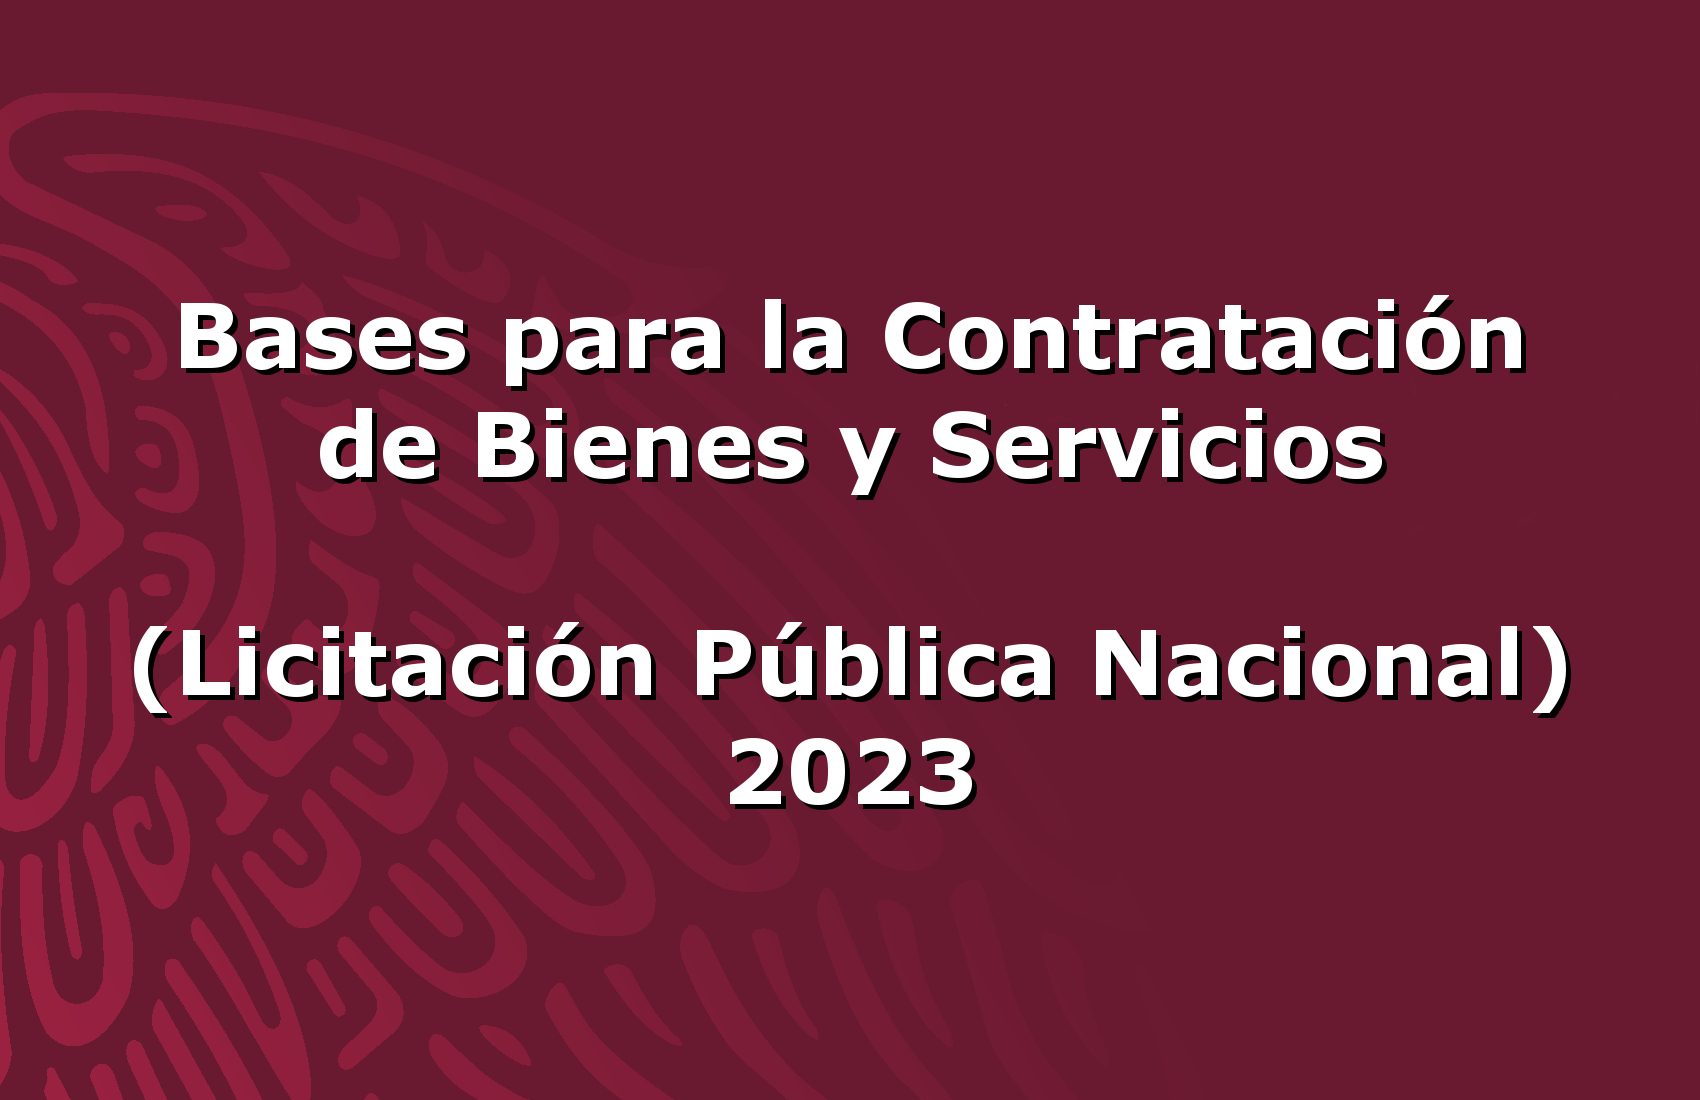 Bases para la Contratación de Bienes y Servicios, Licitación Pública Nacional 2023